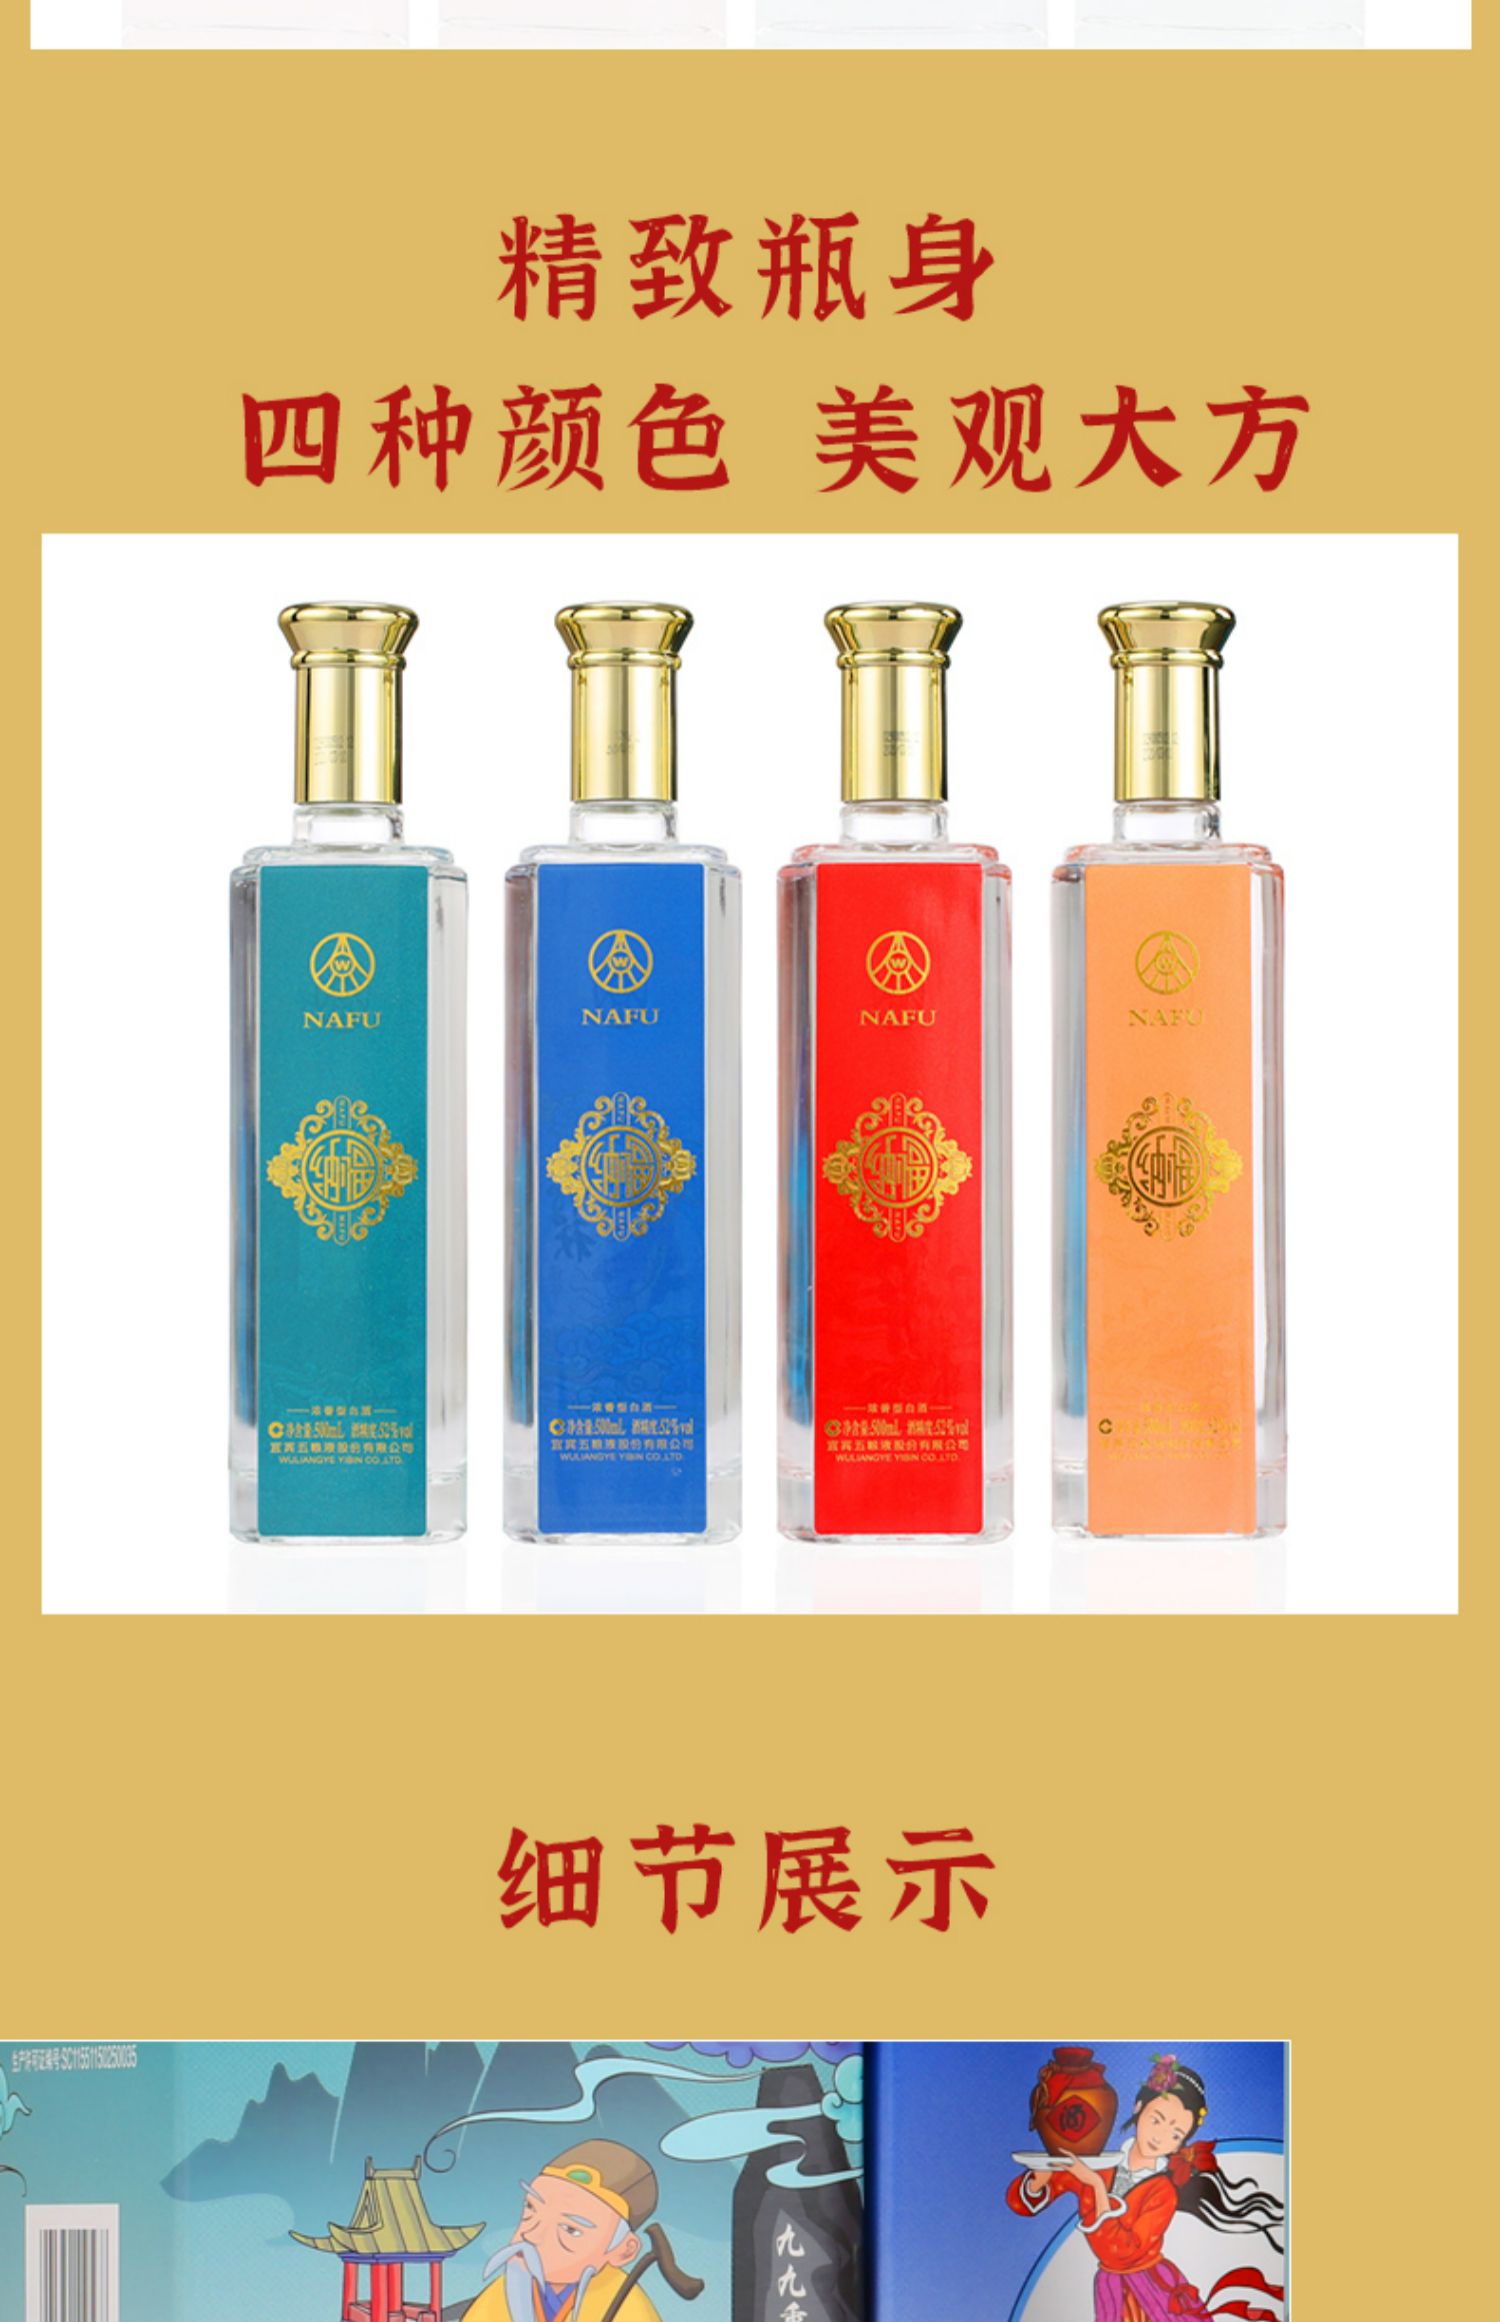 【五粮液】纳福文化艺术酒52度*4瓶礼盒装